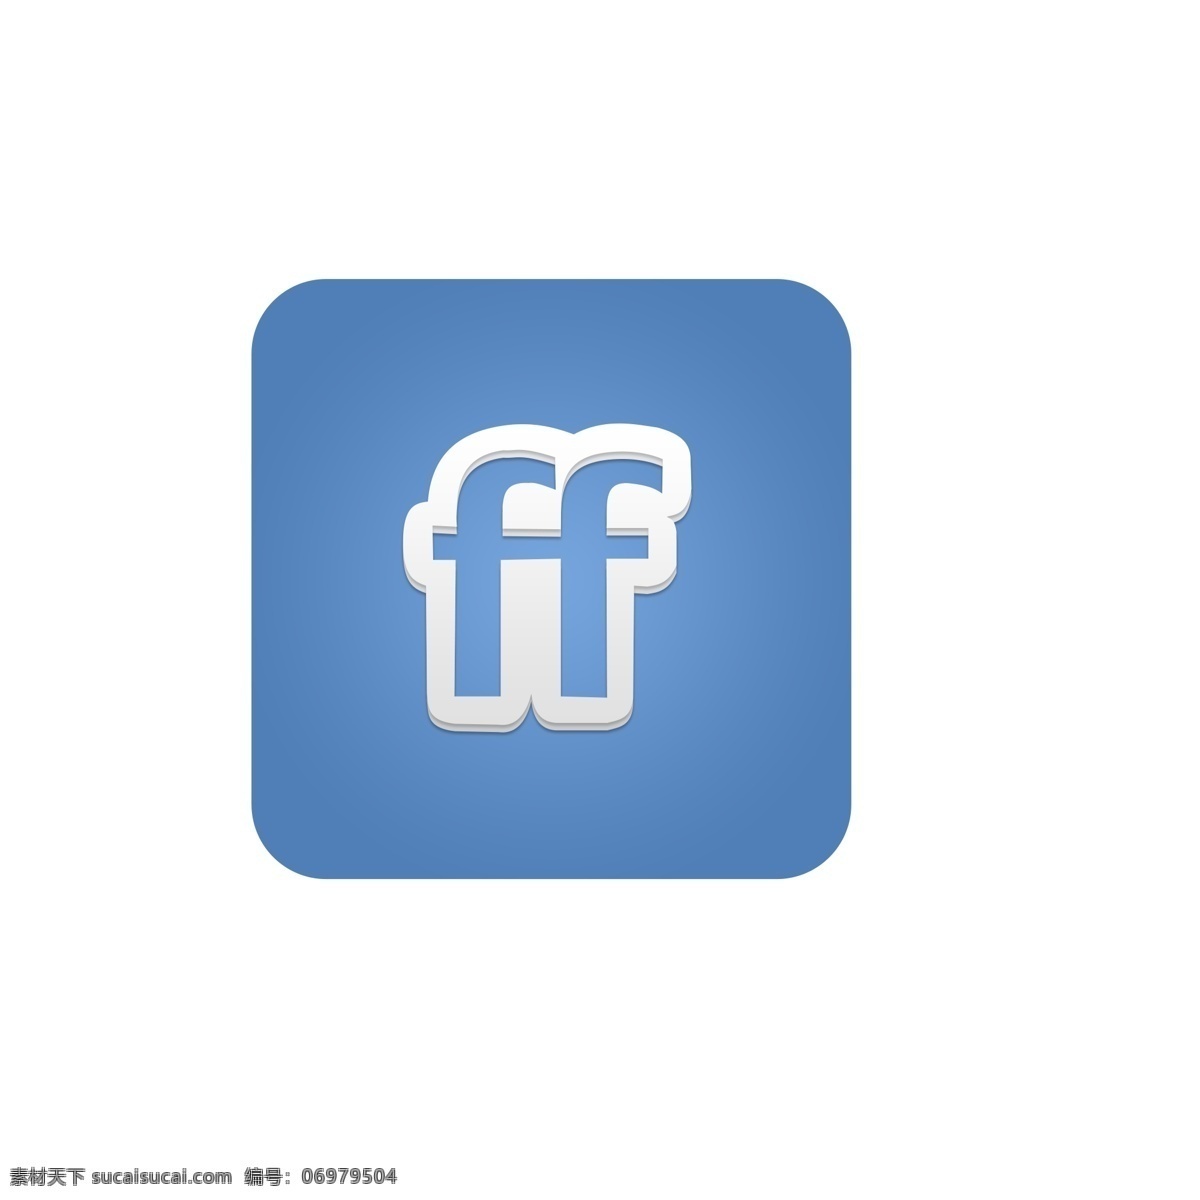 蓝白色 ff 字母 符号 图标 免 扣 图 蓝 移动界面设计 常用图标 创意图标 icon 白色 ff字母 符号图标 免扣图